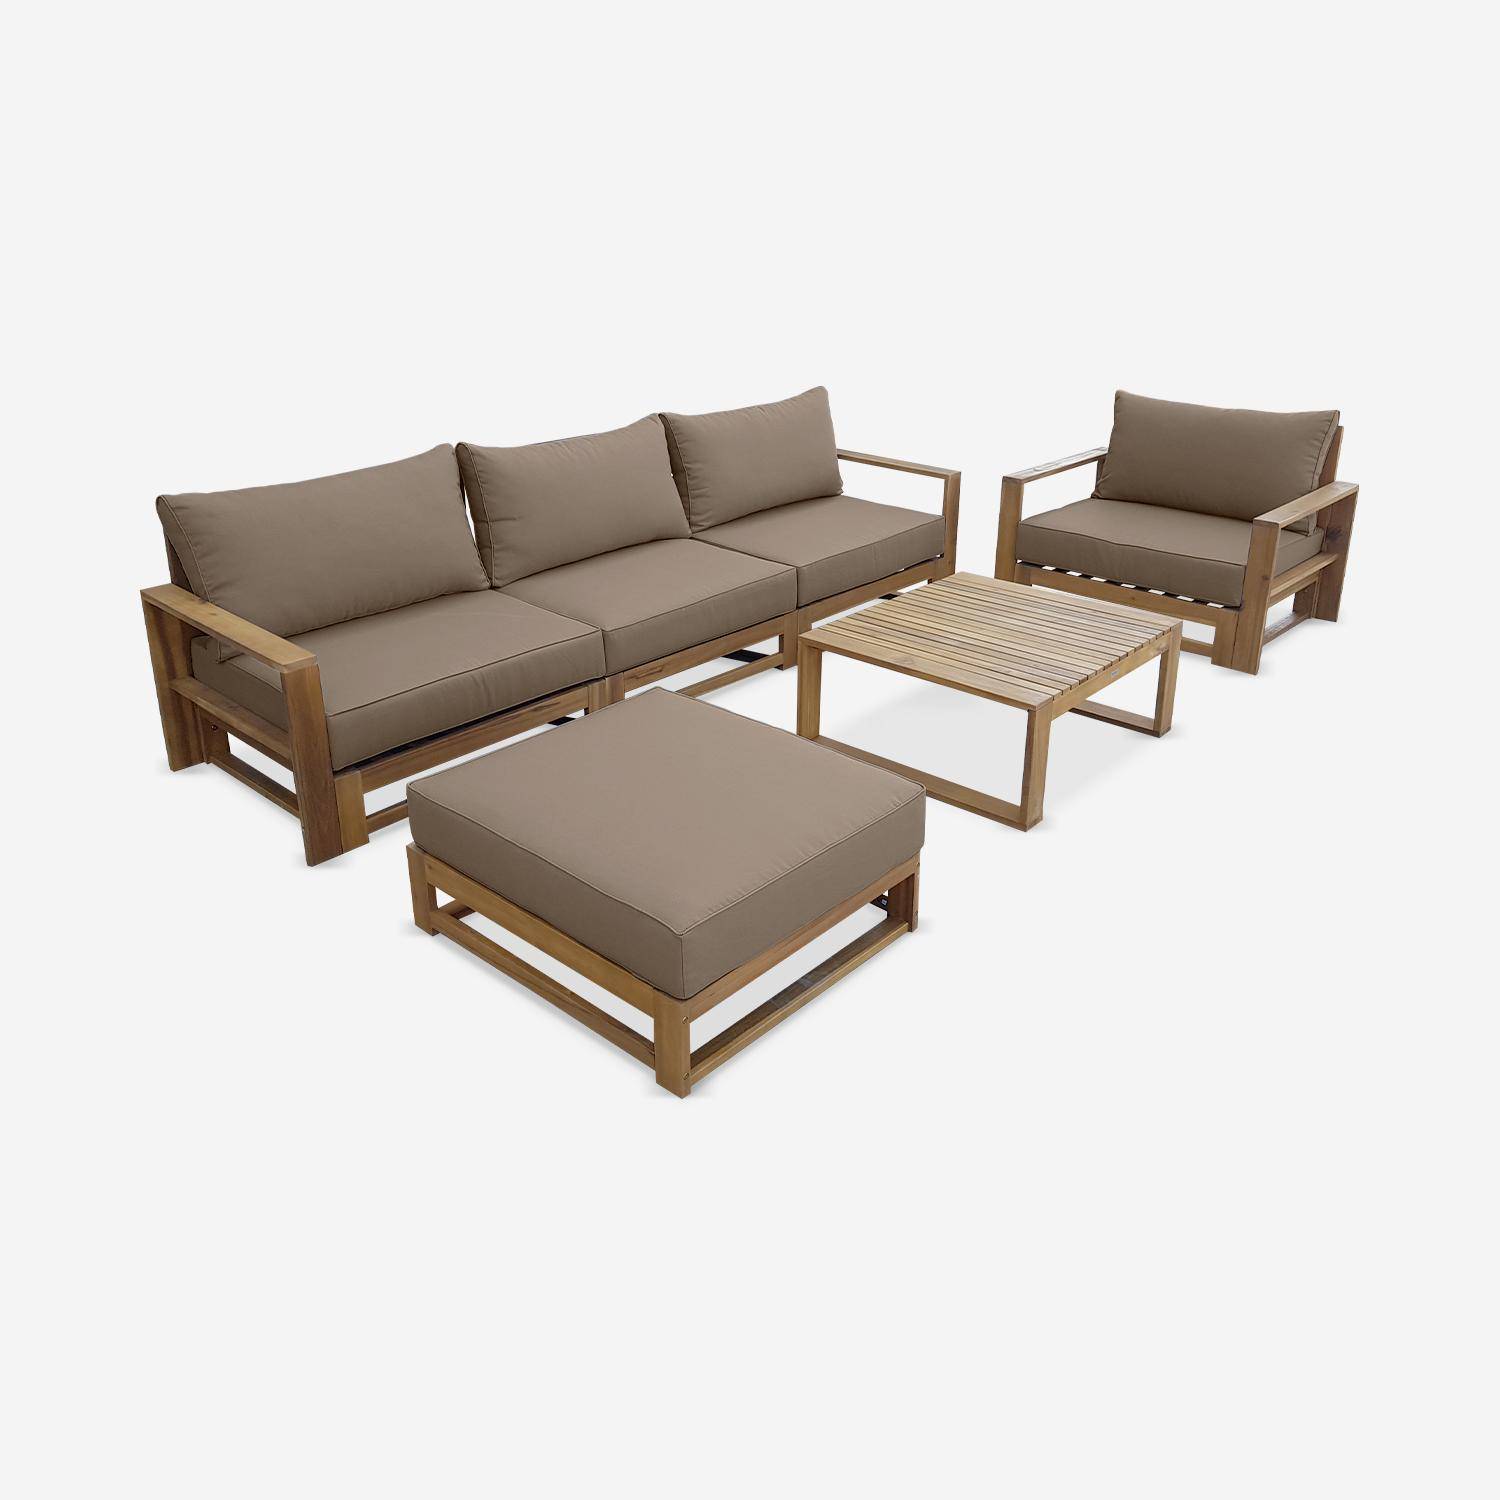 Gartenmöbel aus Holz mit 5 Sitzplätzen - Mendoza - Taupefarbene Kissen, Sofa, Sessel und Couchtisch aus Akazie, 6 modulare Elemente, Design Photo2